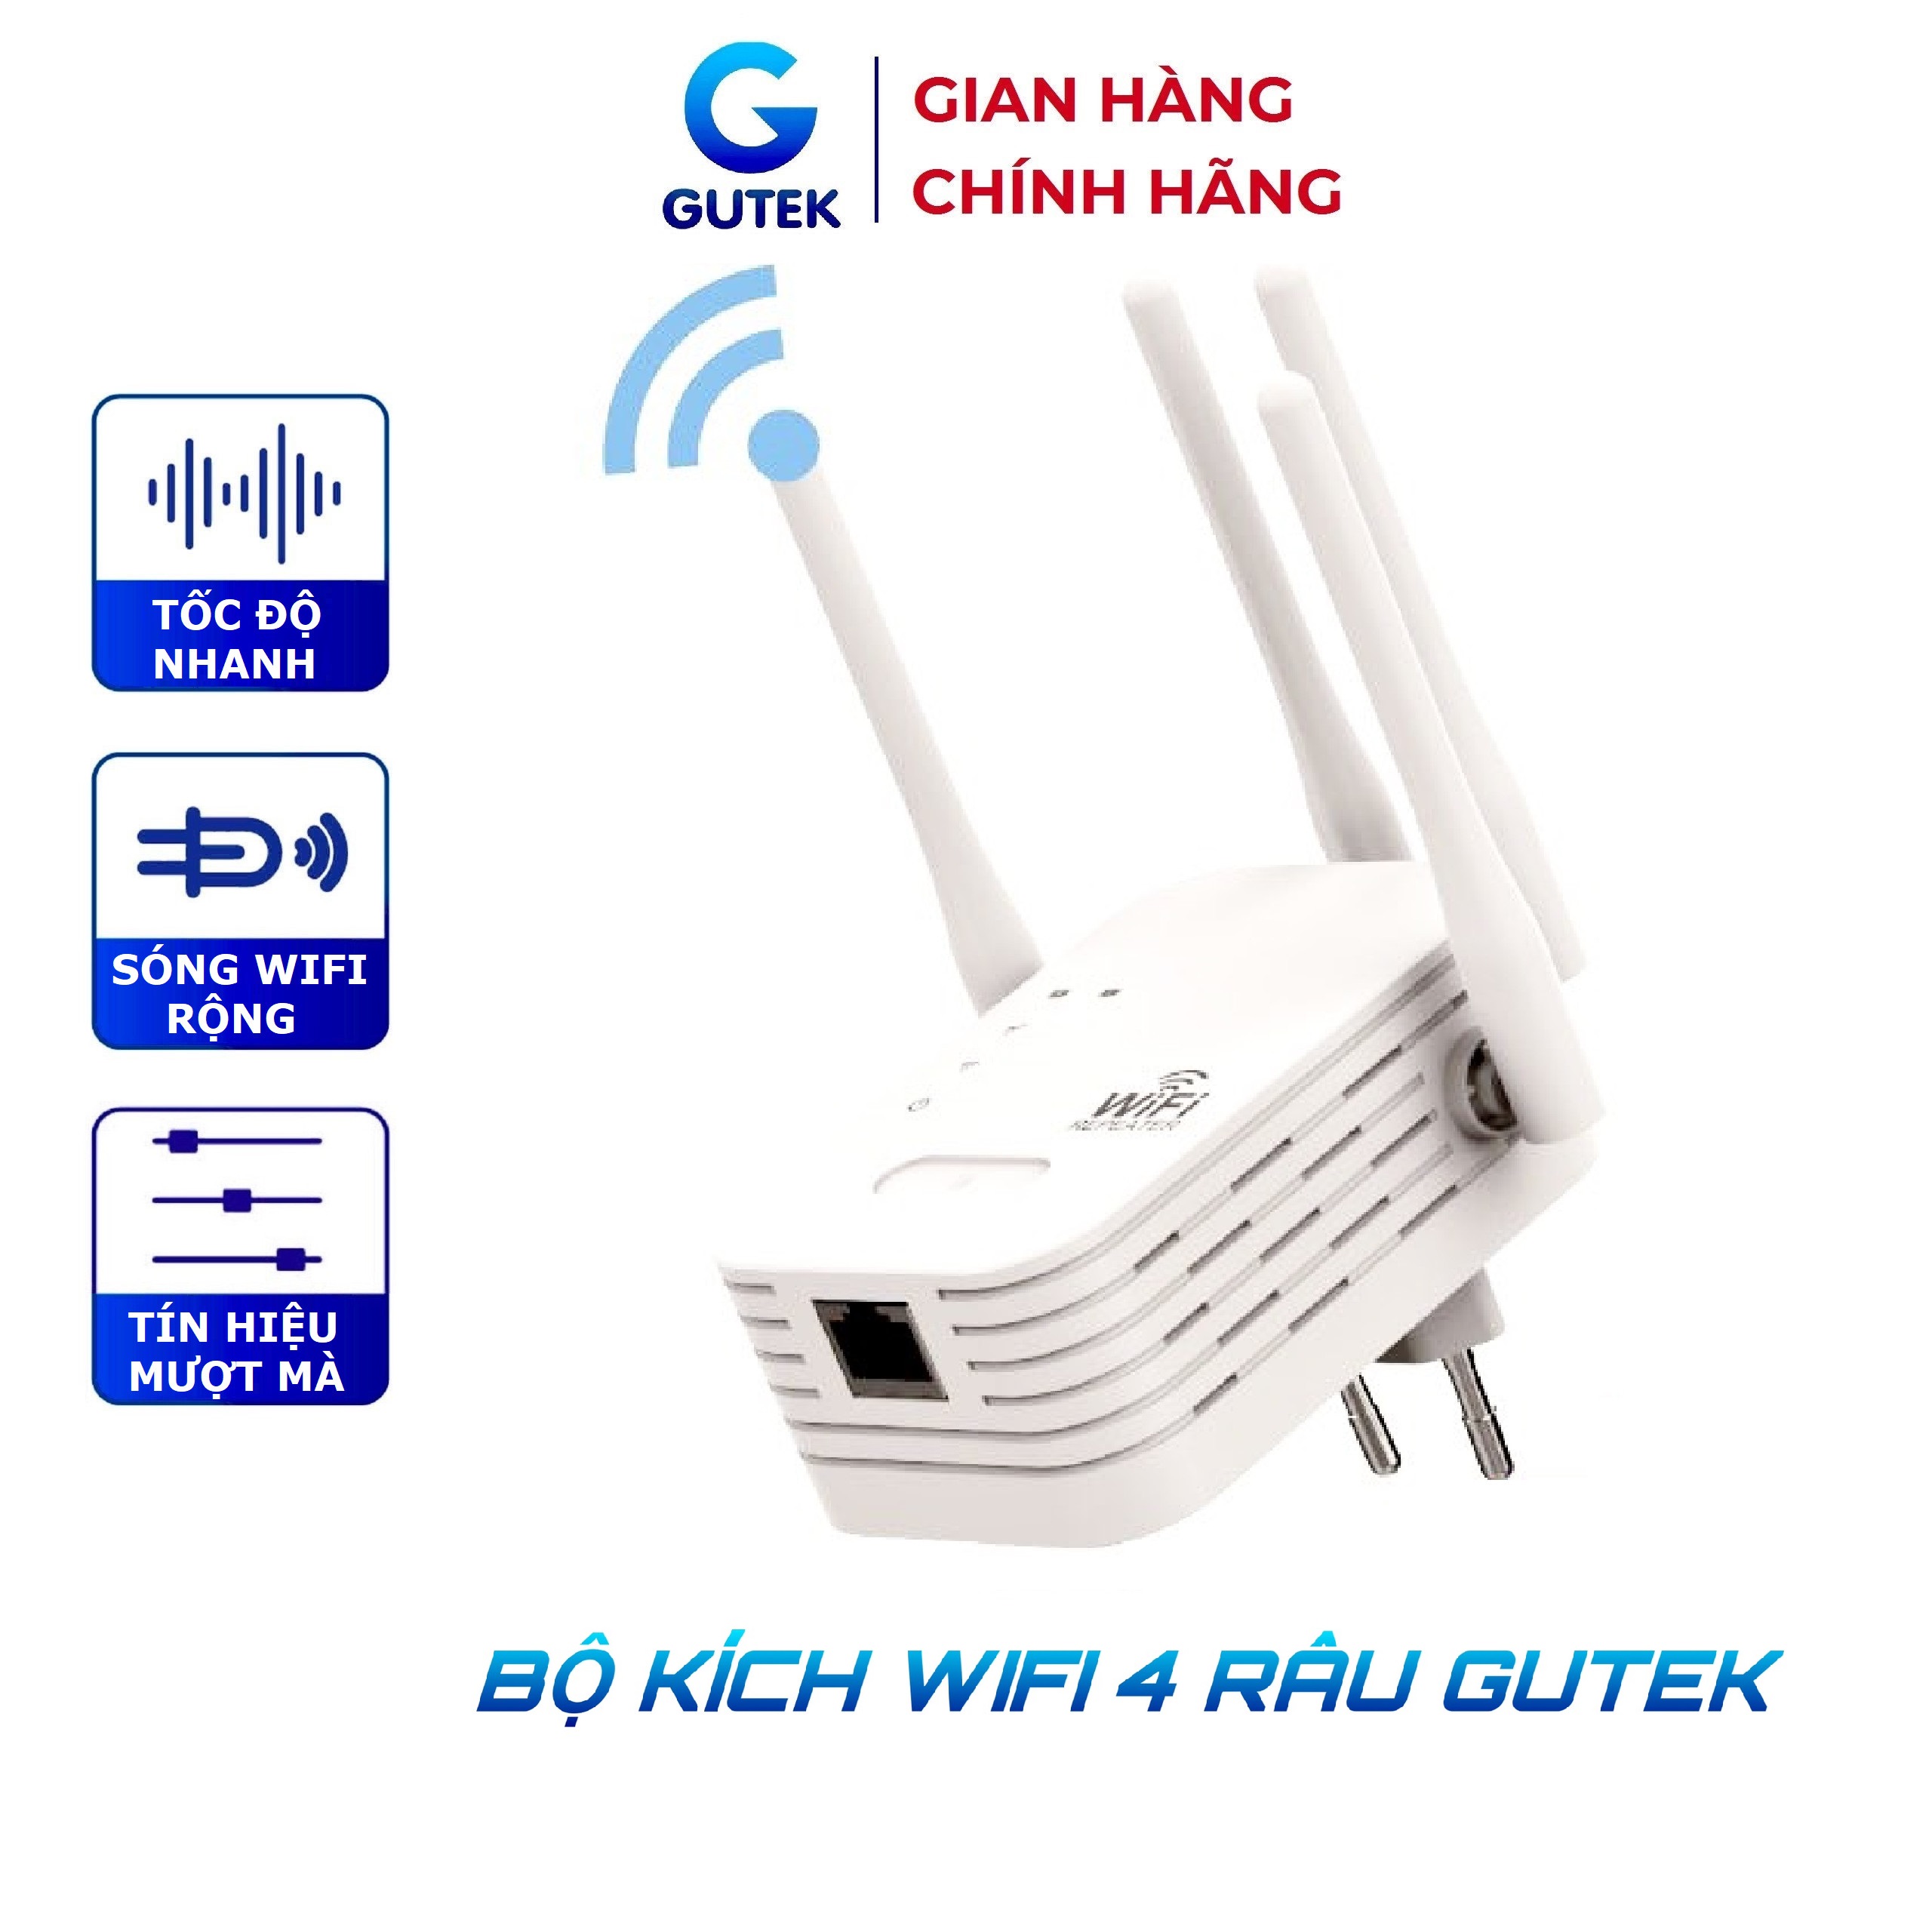 Bộ kích sóng wifi 4 râu Gutek tốc độ 300mbps phát xuyên tường kết nối xa